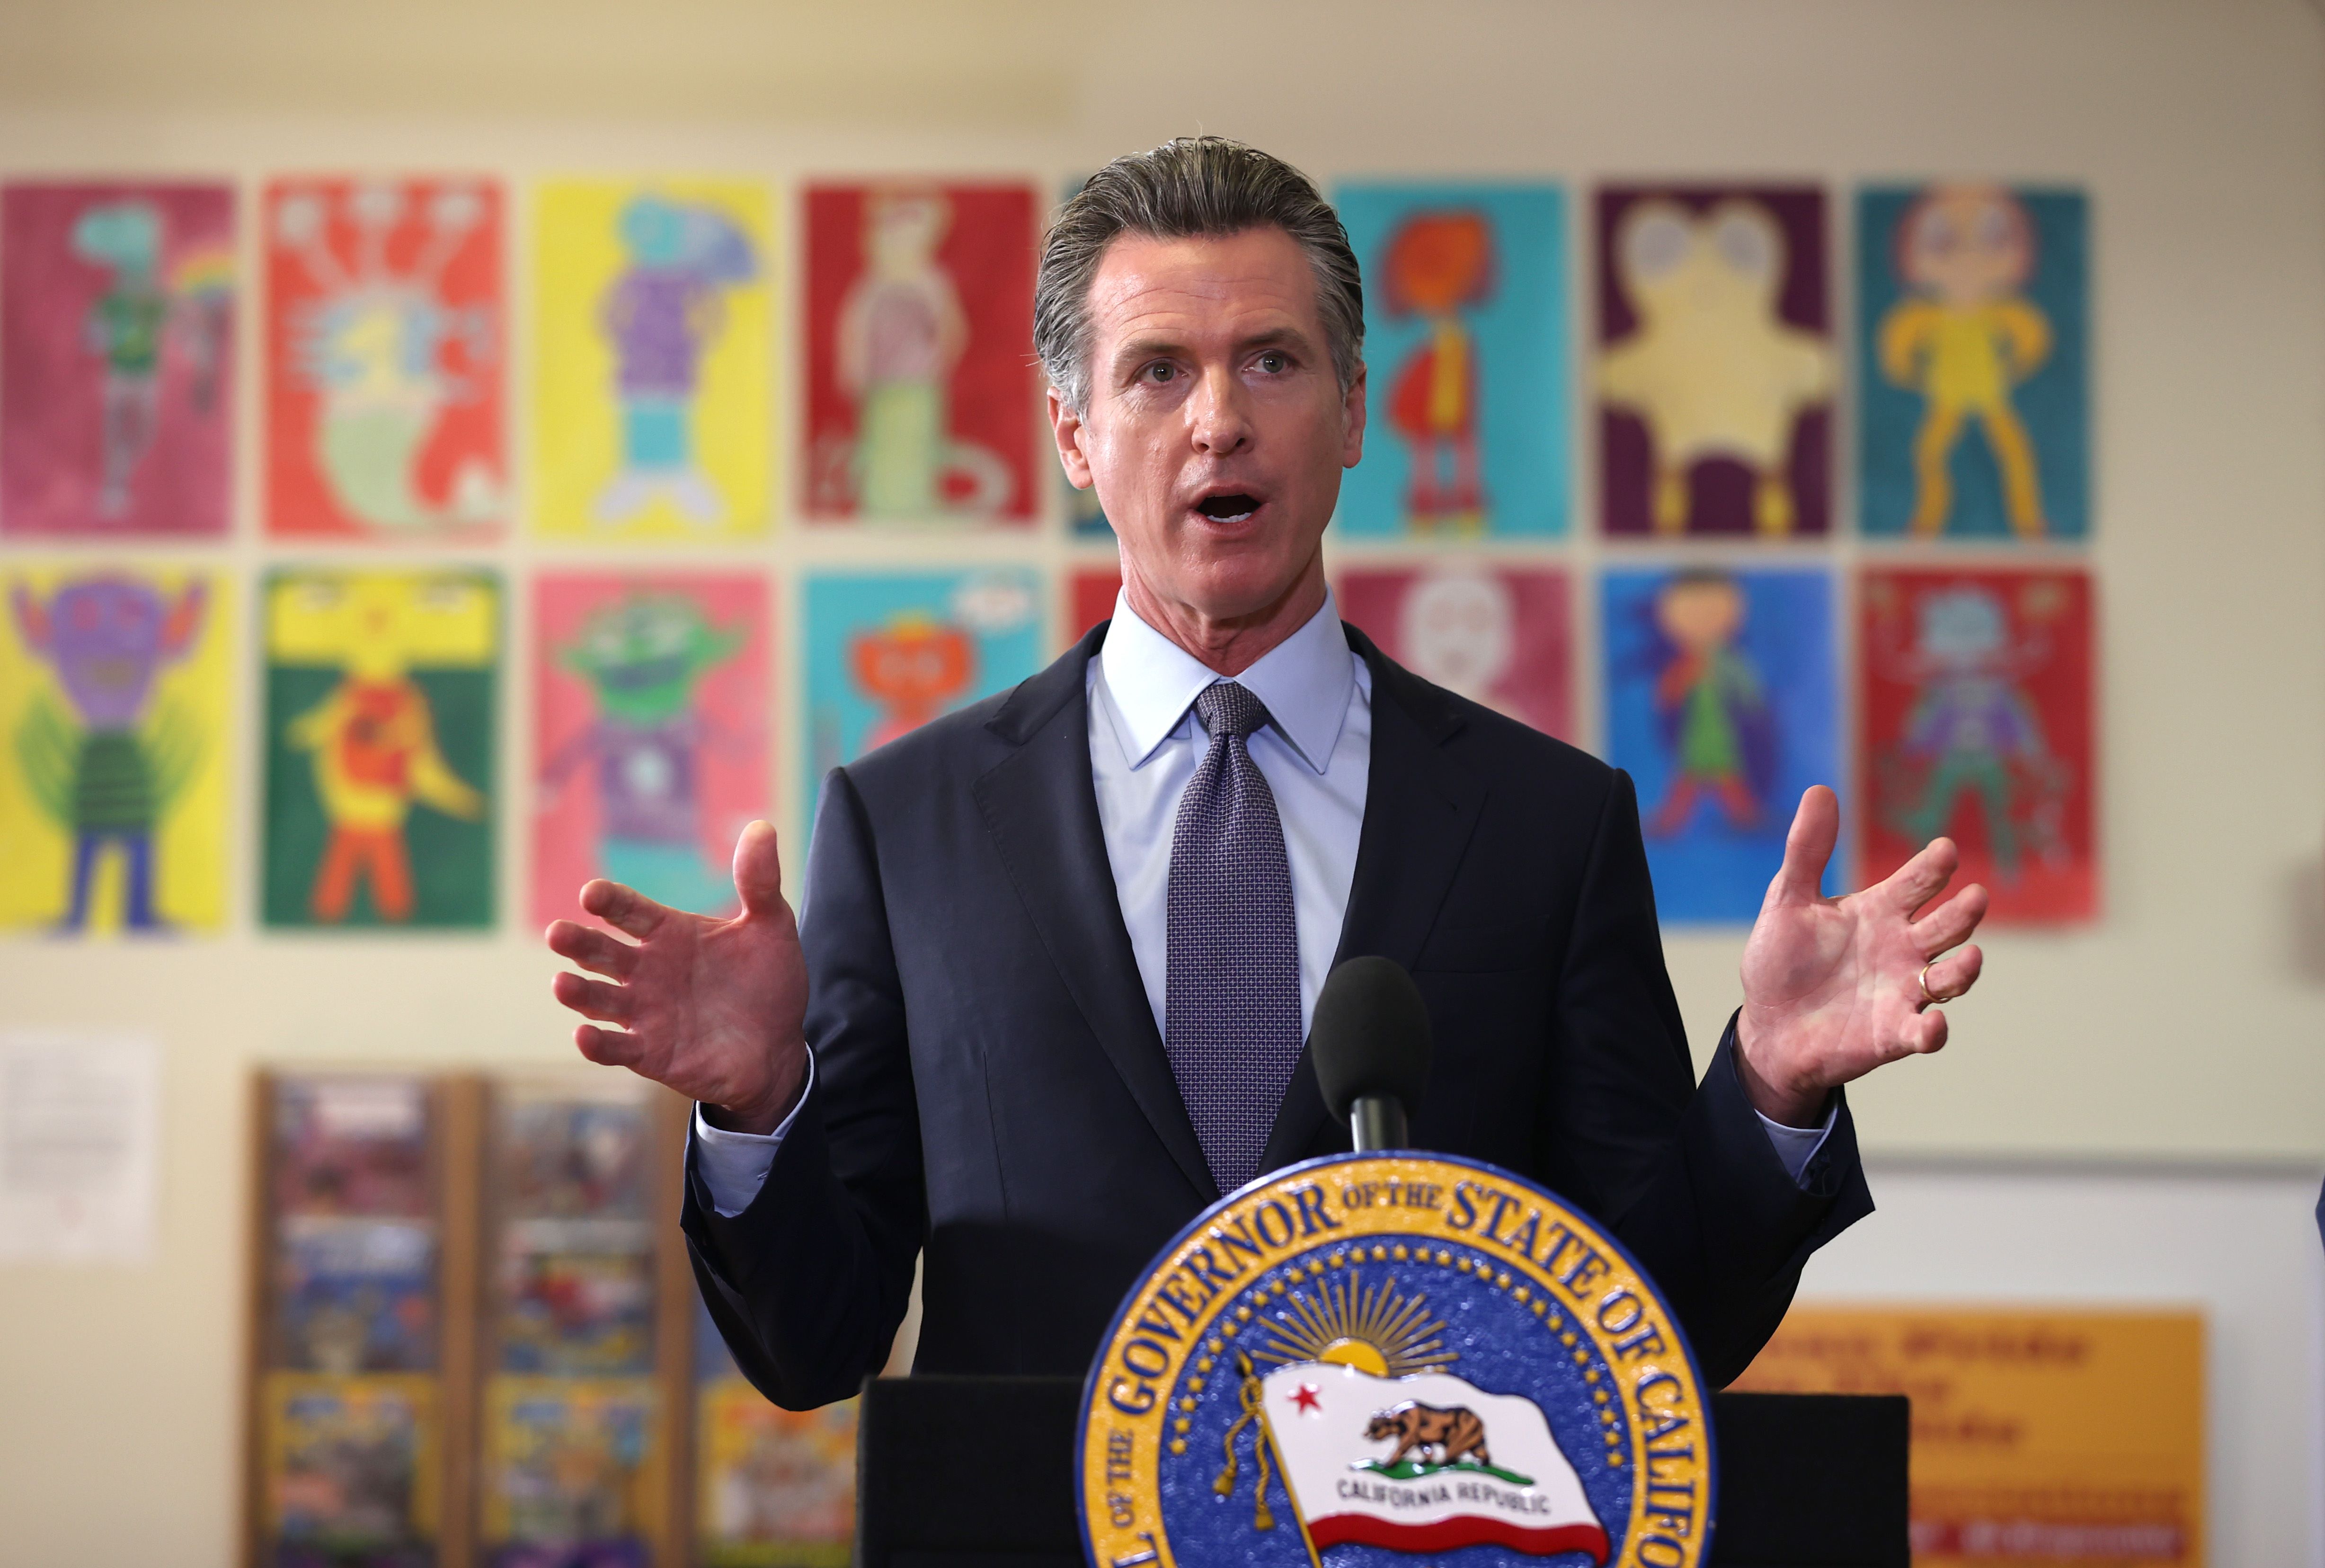  
Gavin Newsom, gobernador de California, anuncia la medida en una escuela de San Francisco. (Foto Prensa Libre: AFP)
